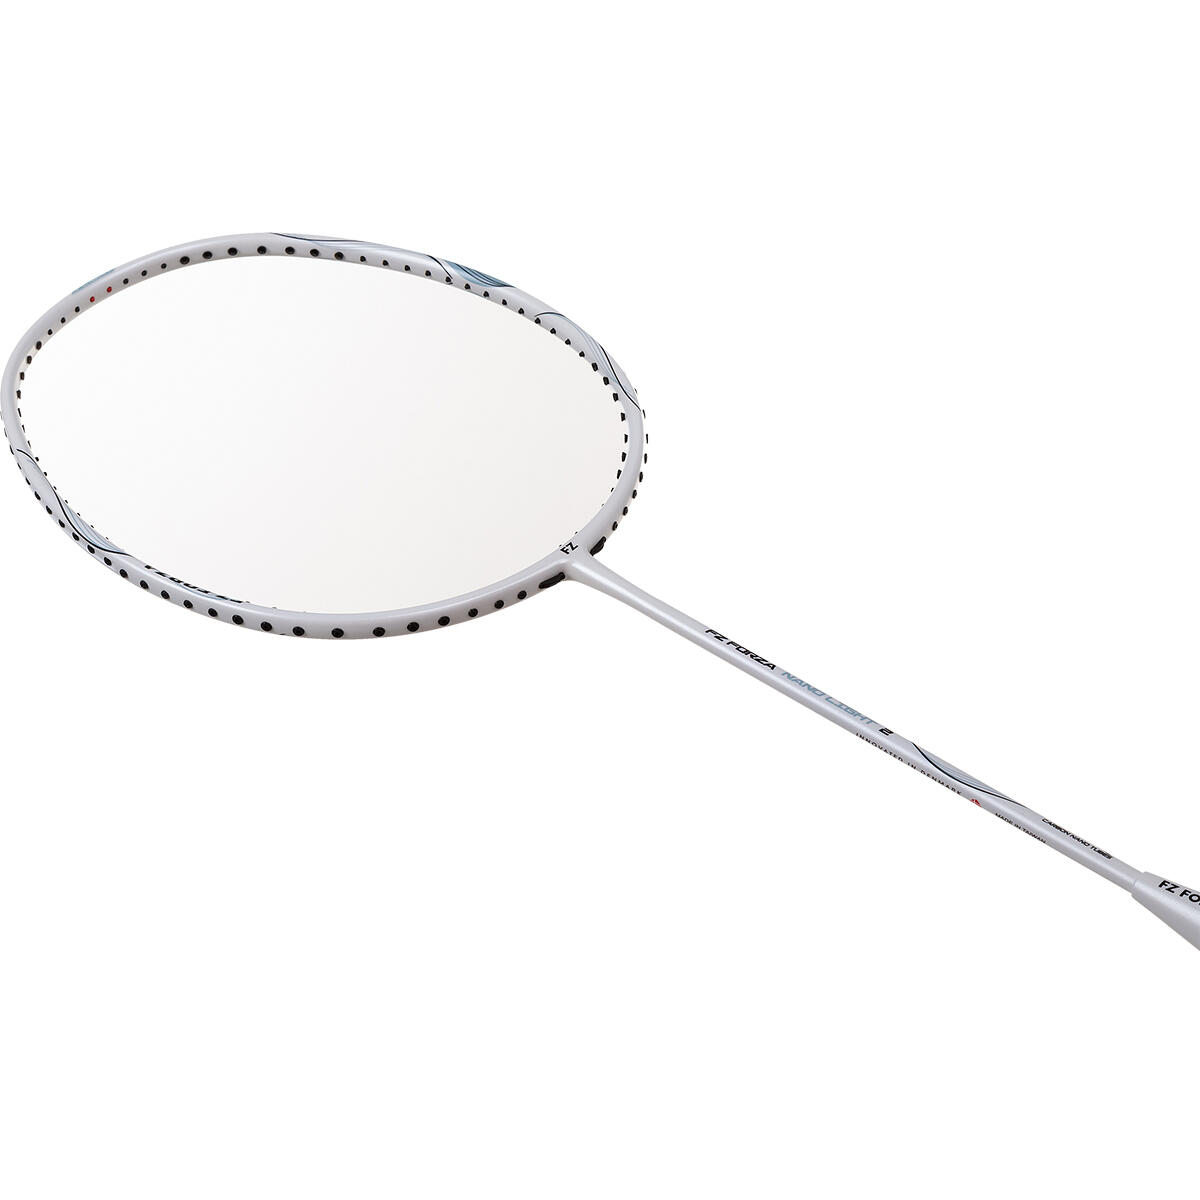 FZ Forza Nano Light 2 Badminton Racket 2/6